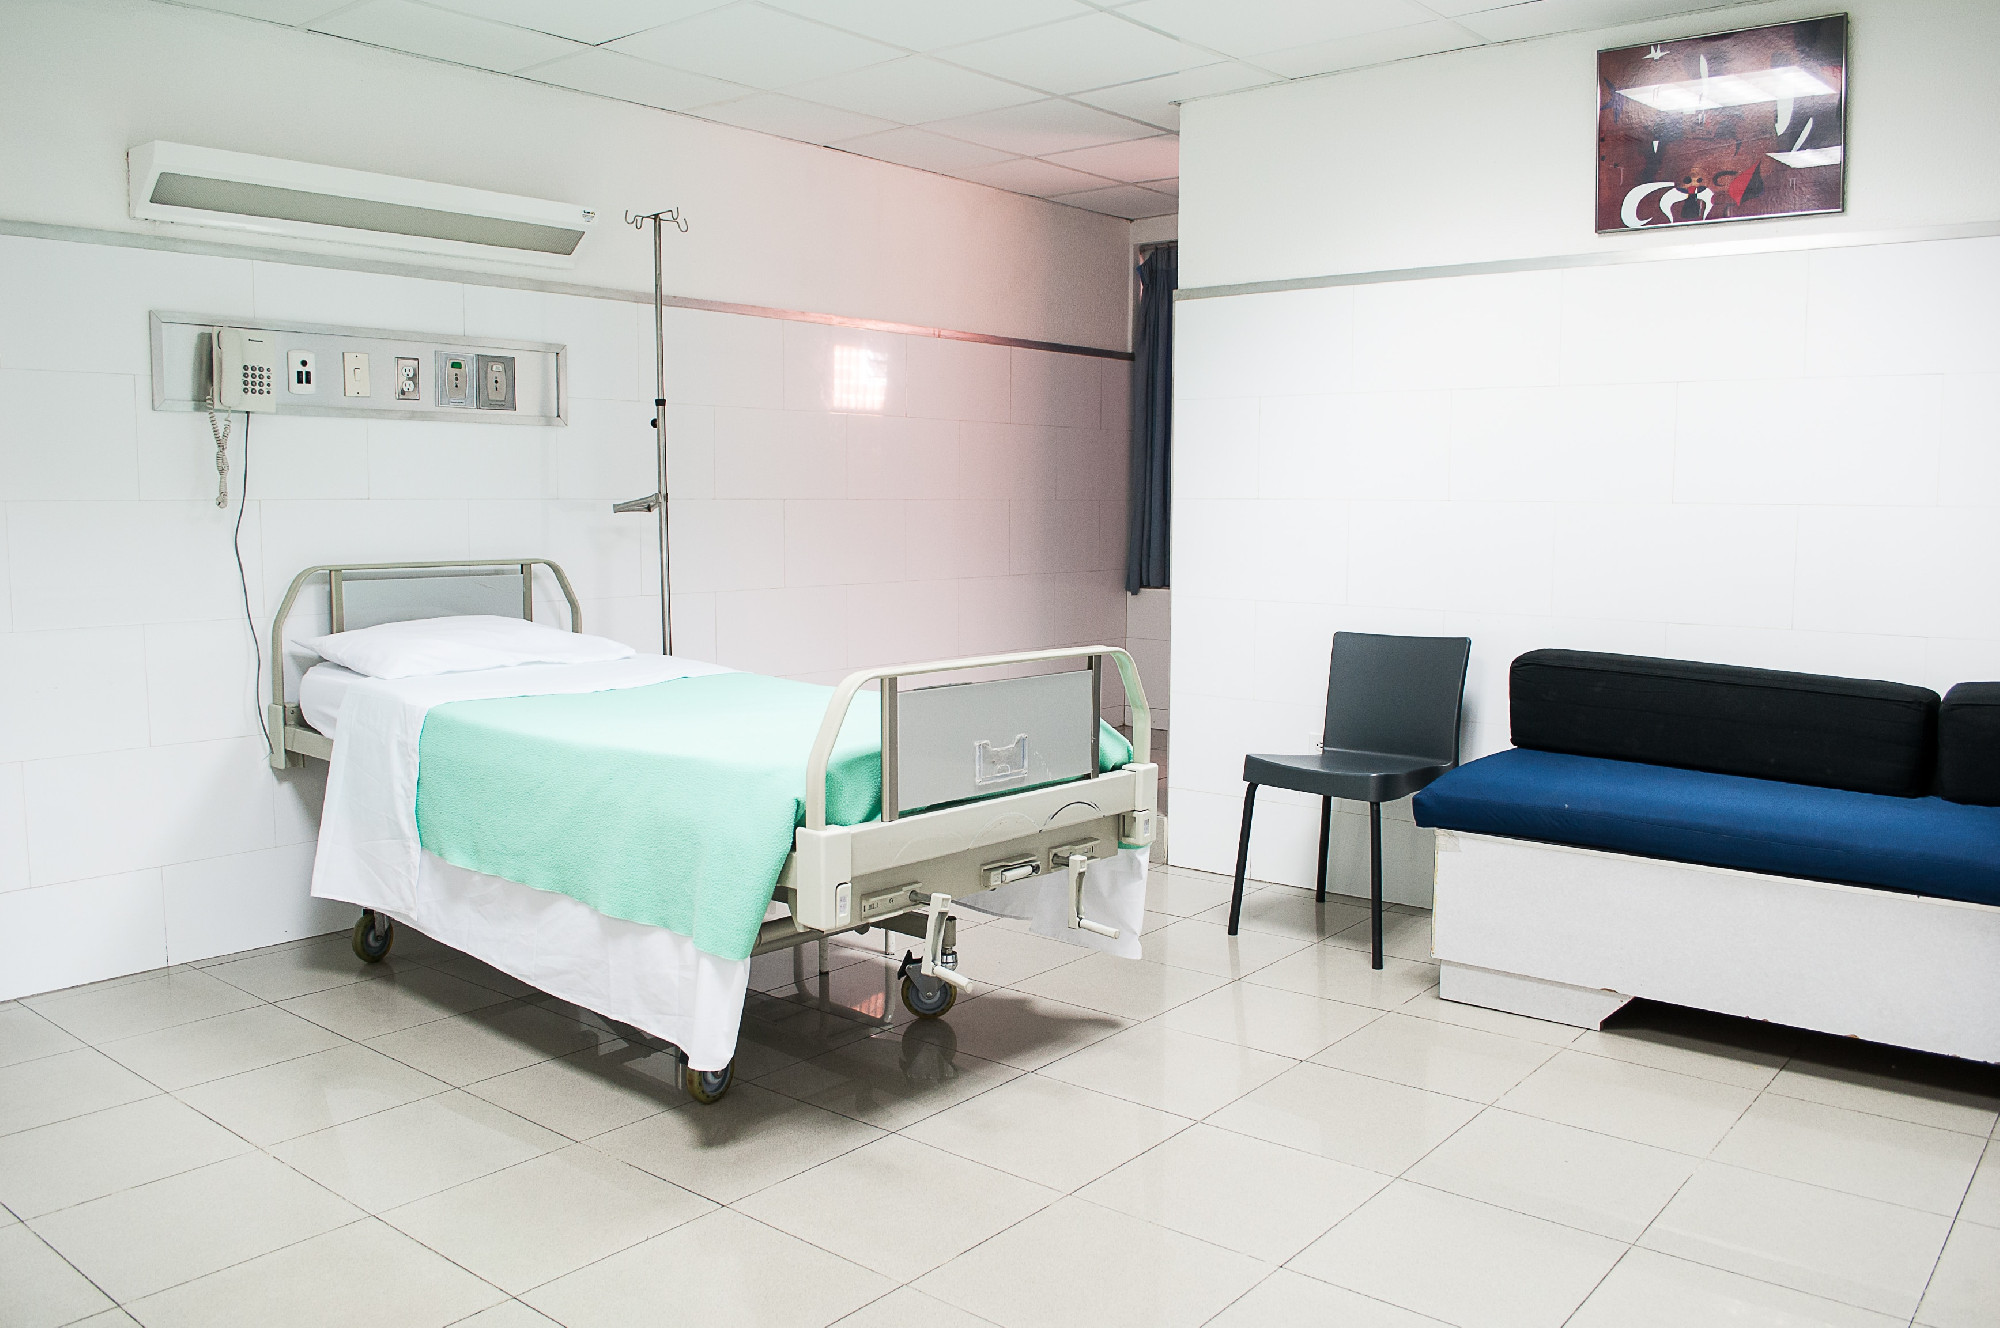 Etetés közben fulladt meg egy fiú egy tolnai kórházban